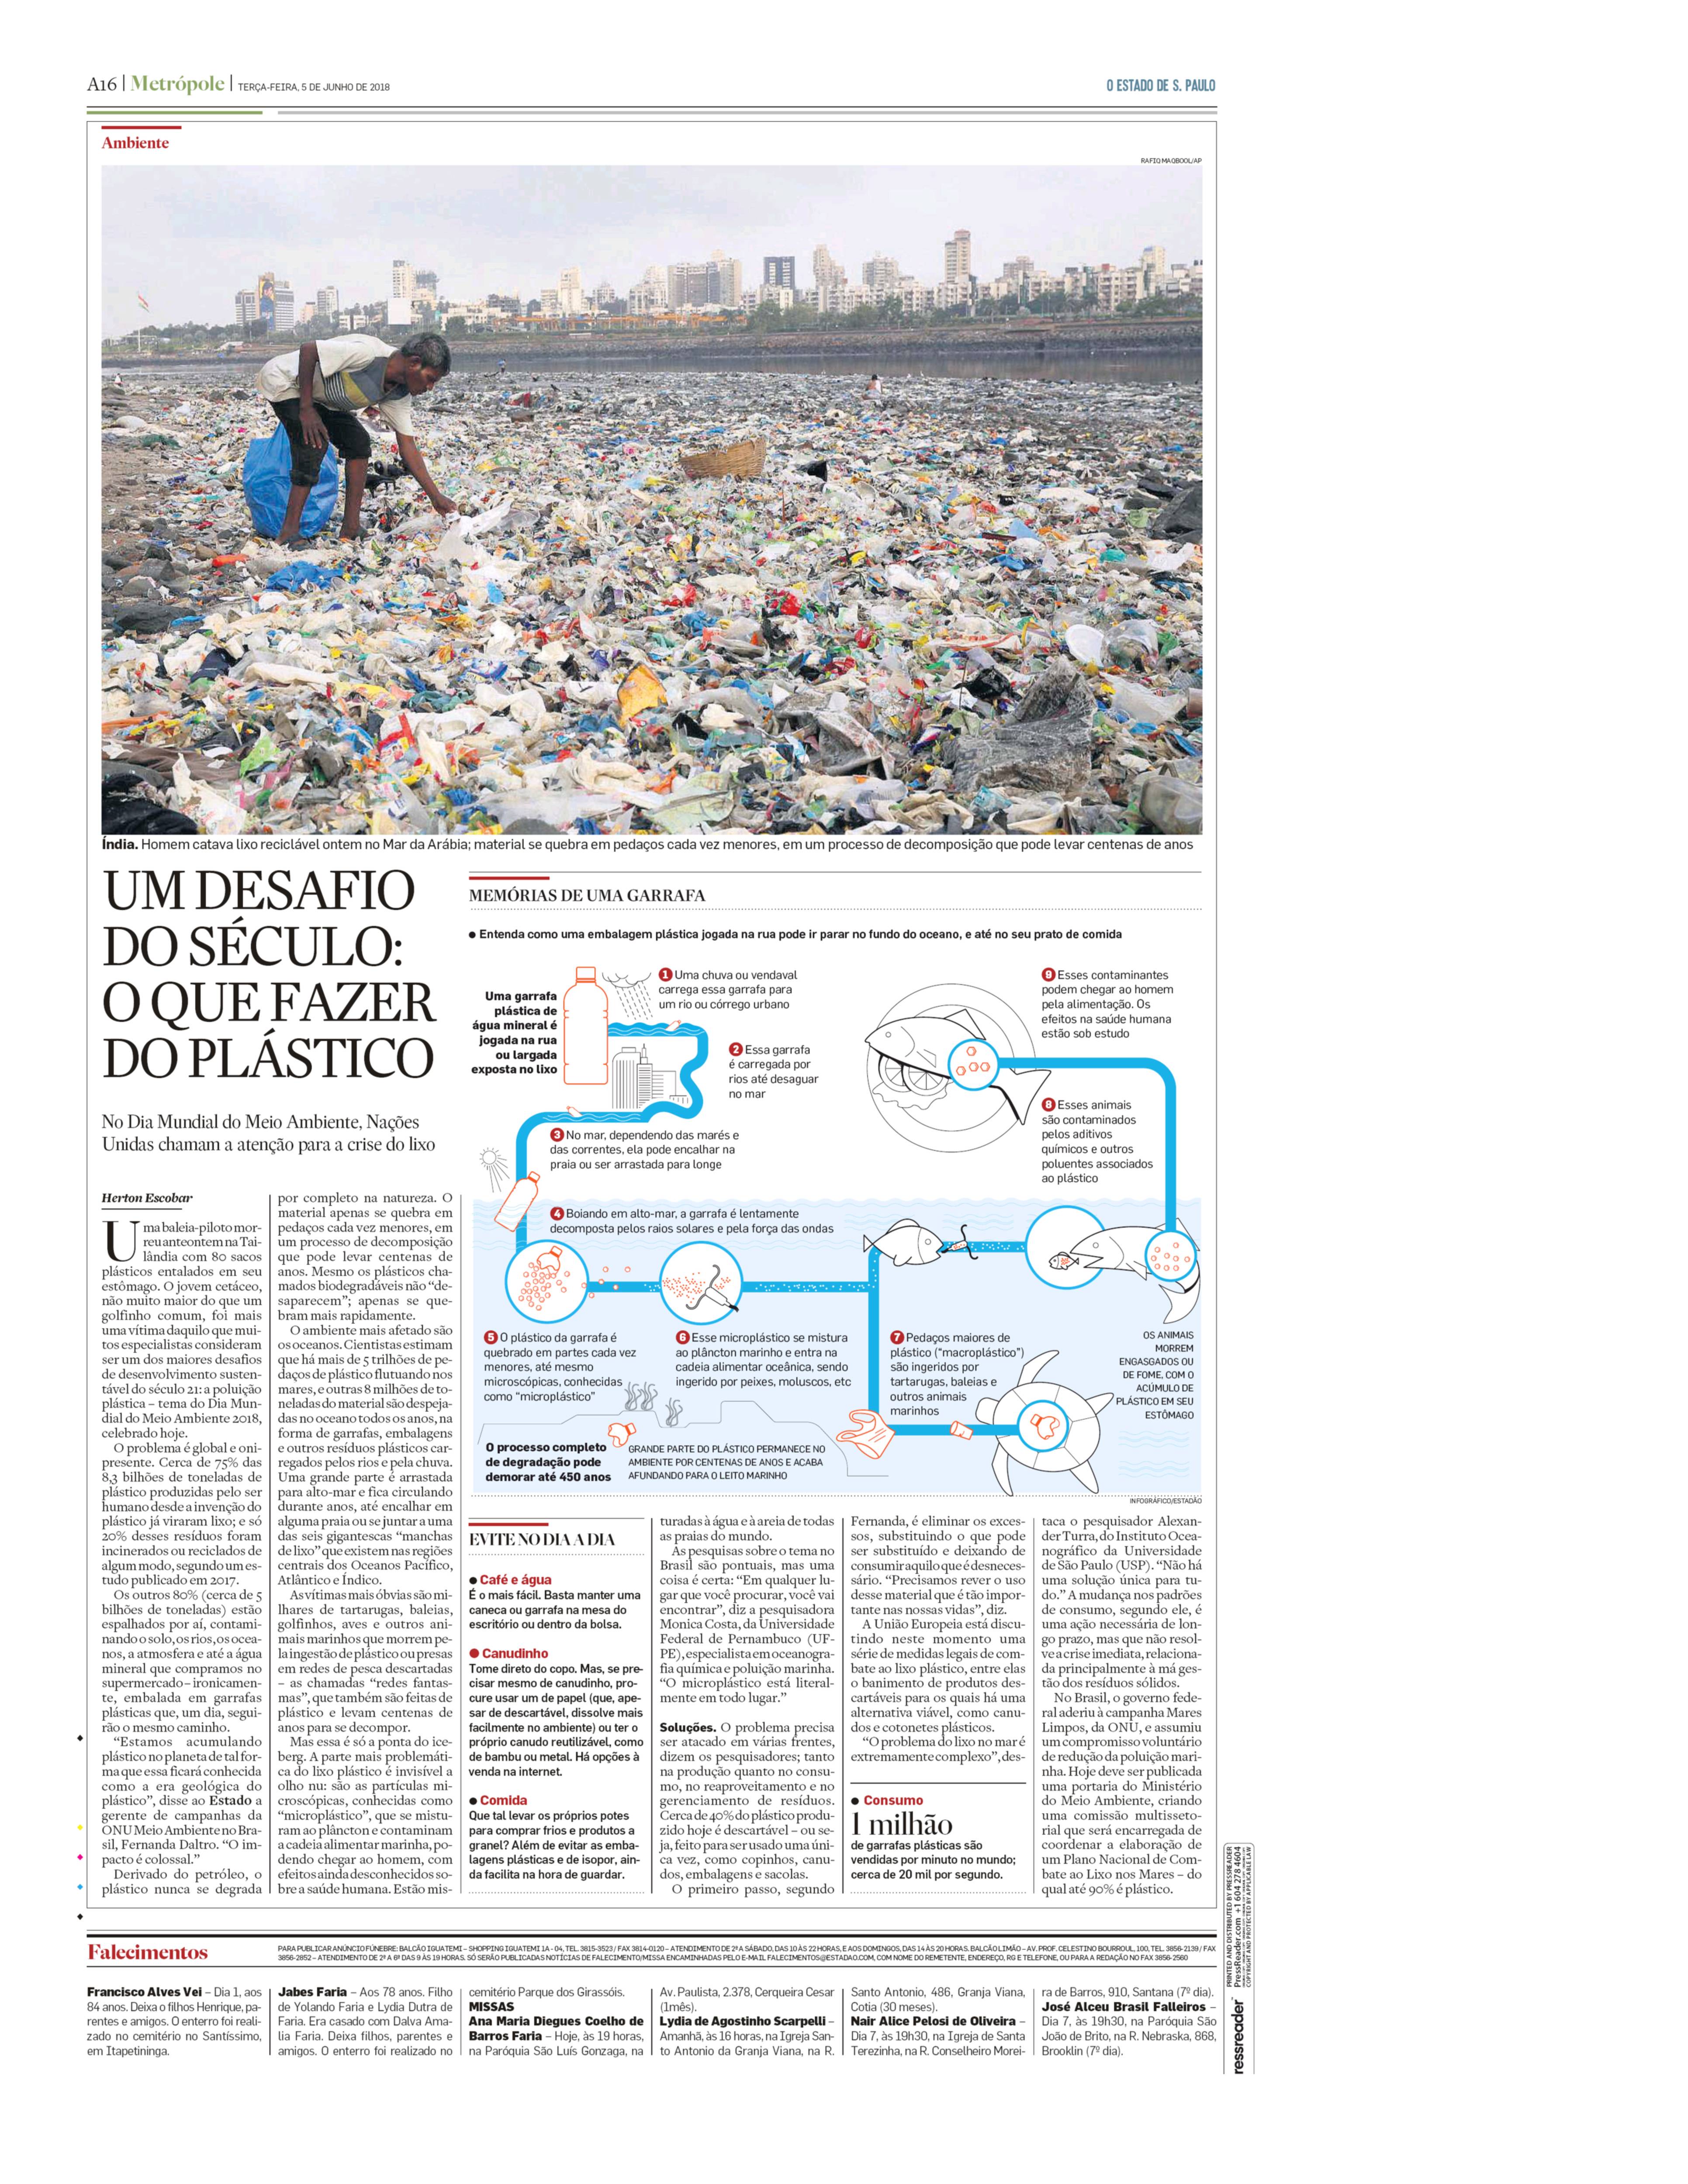 Um desafio do século: O que fazer com o plástico que não vai embora?